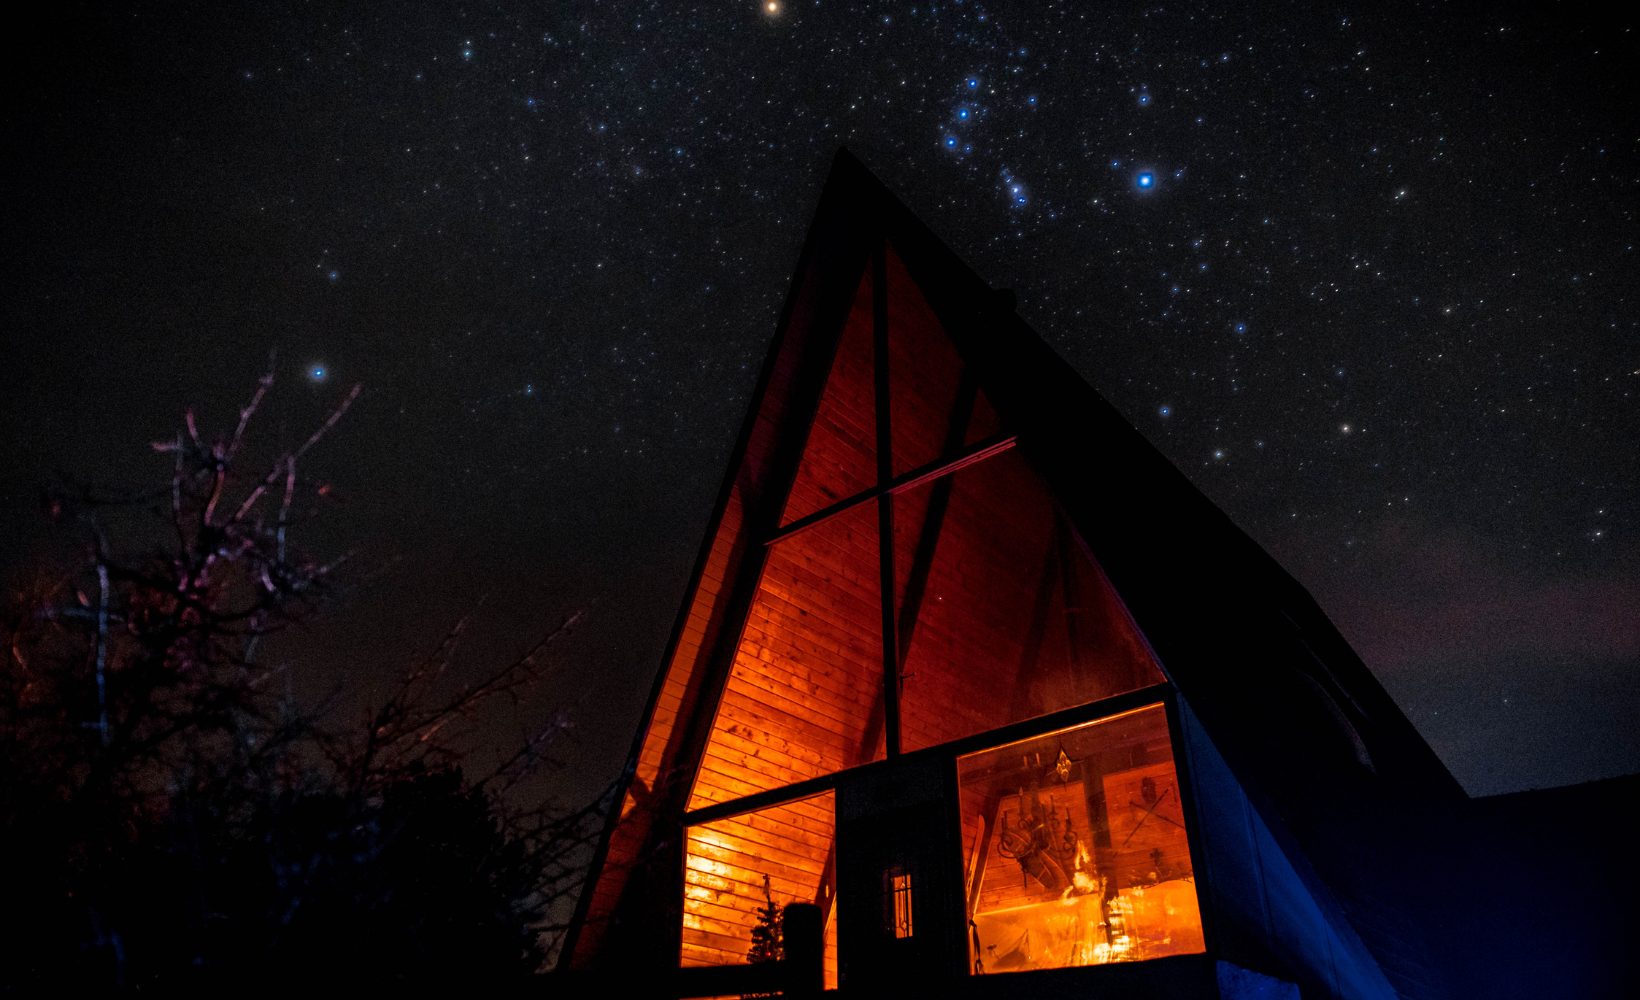 Dimly lit cabin under stars